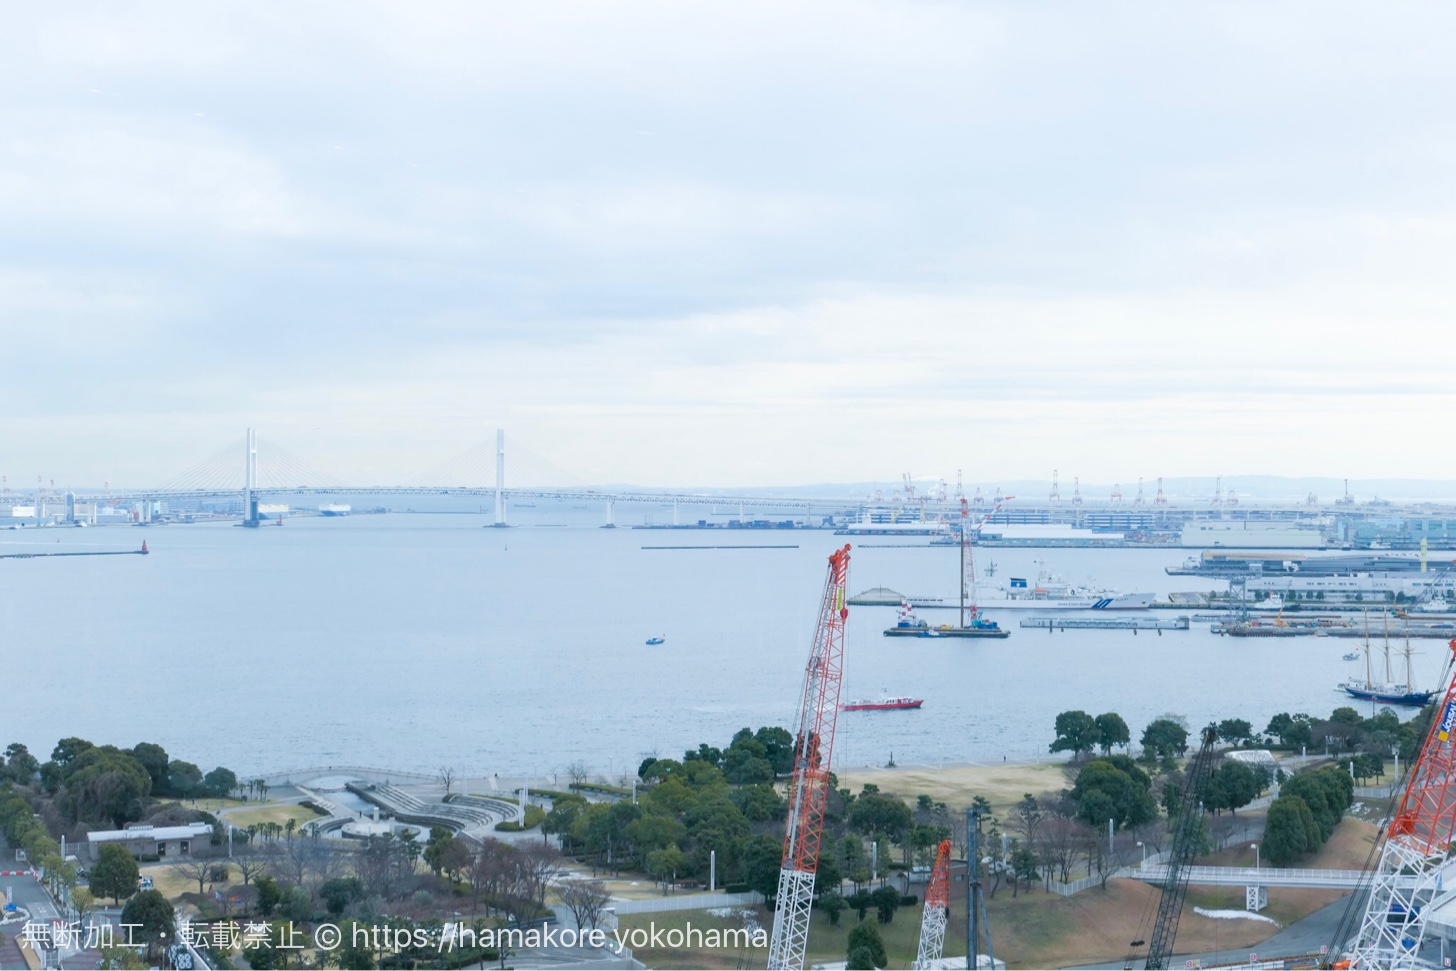 オリエンタルビーチみなとみらいから見た横浜港